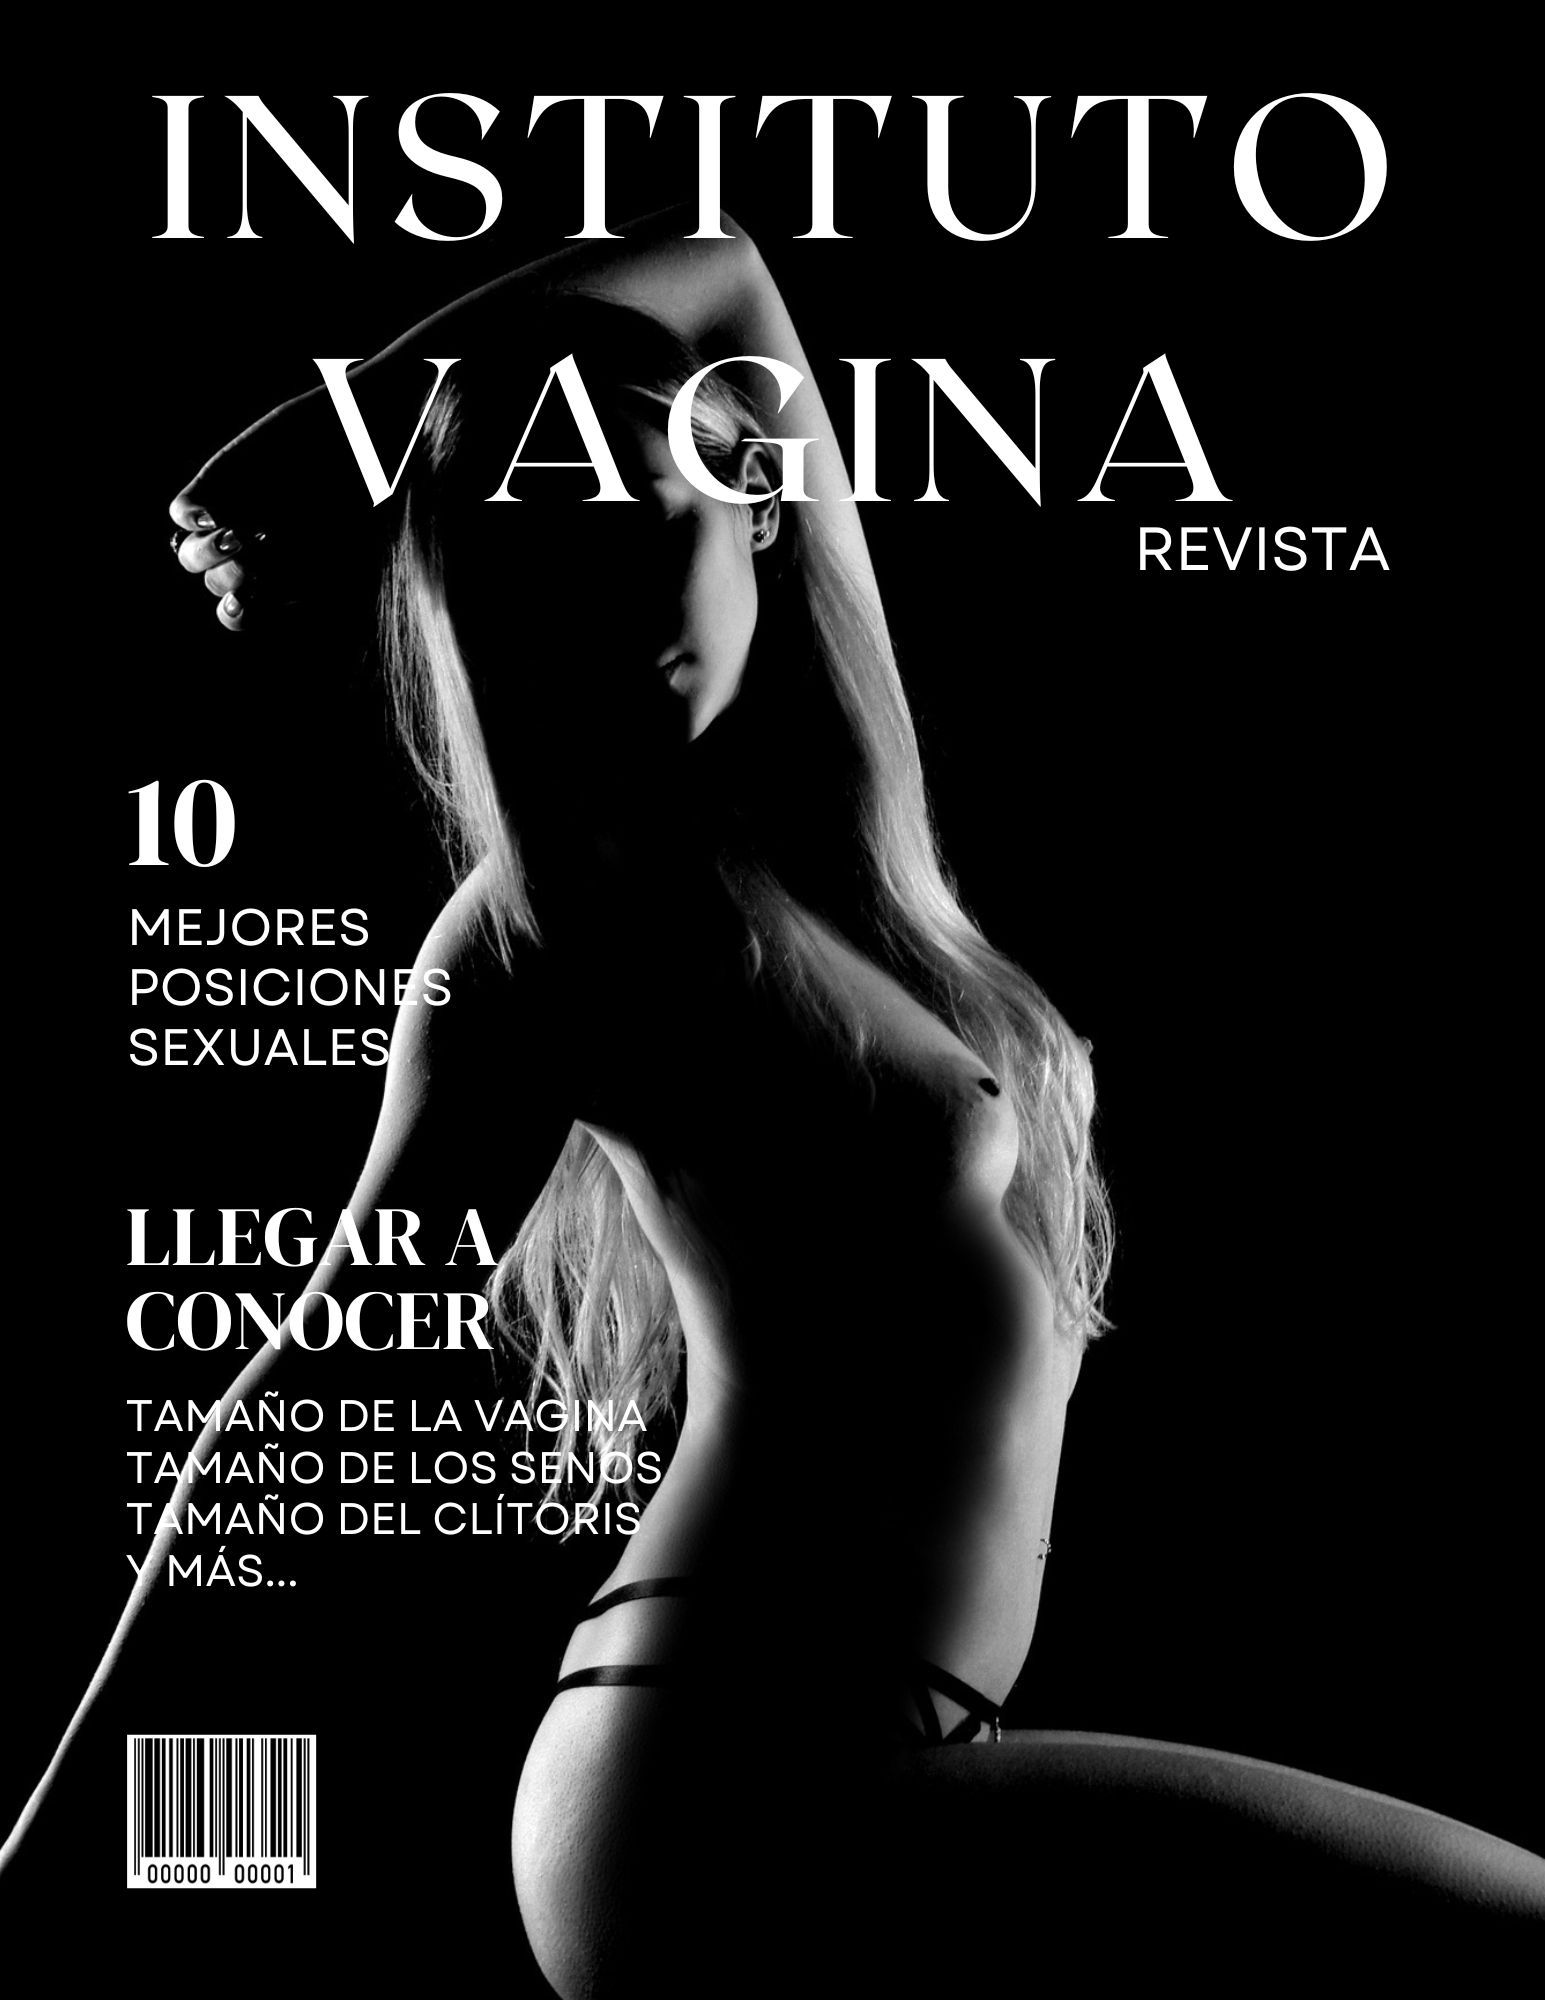 Revista del instituto vagina 10 mejores posiciones sexuales para mujeres